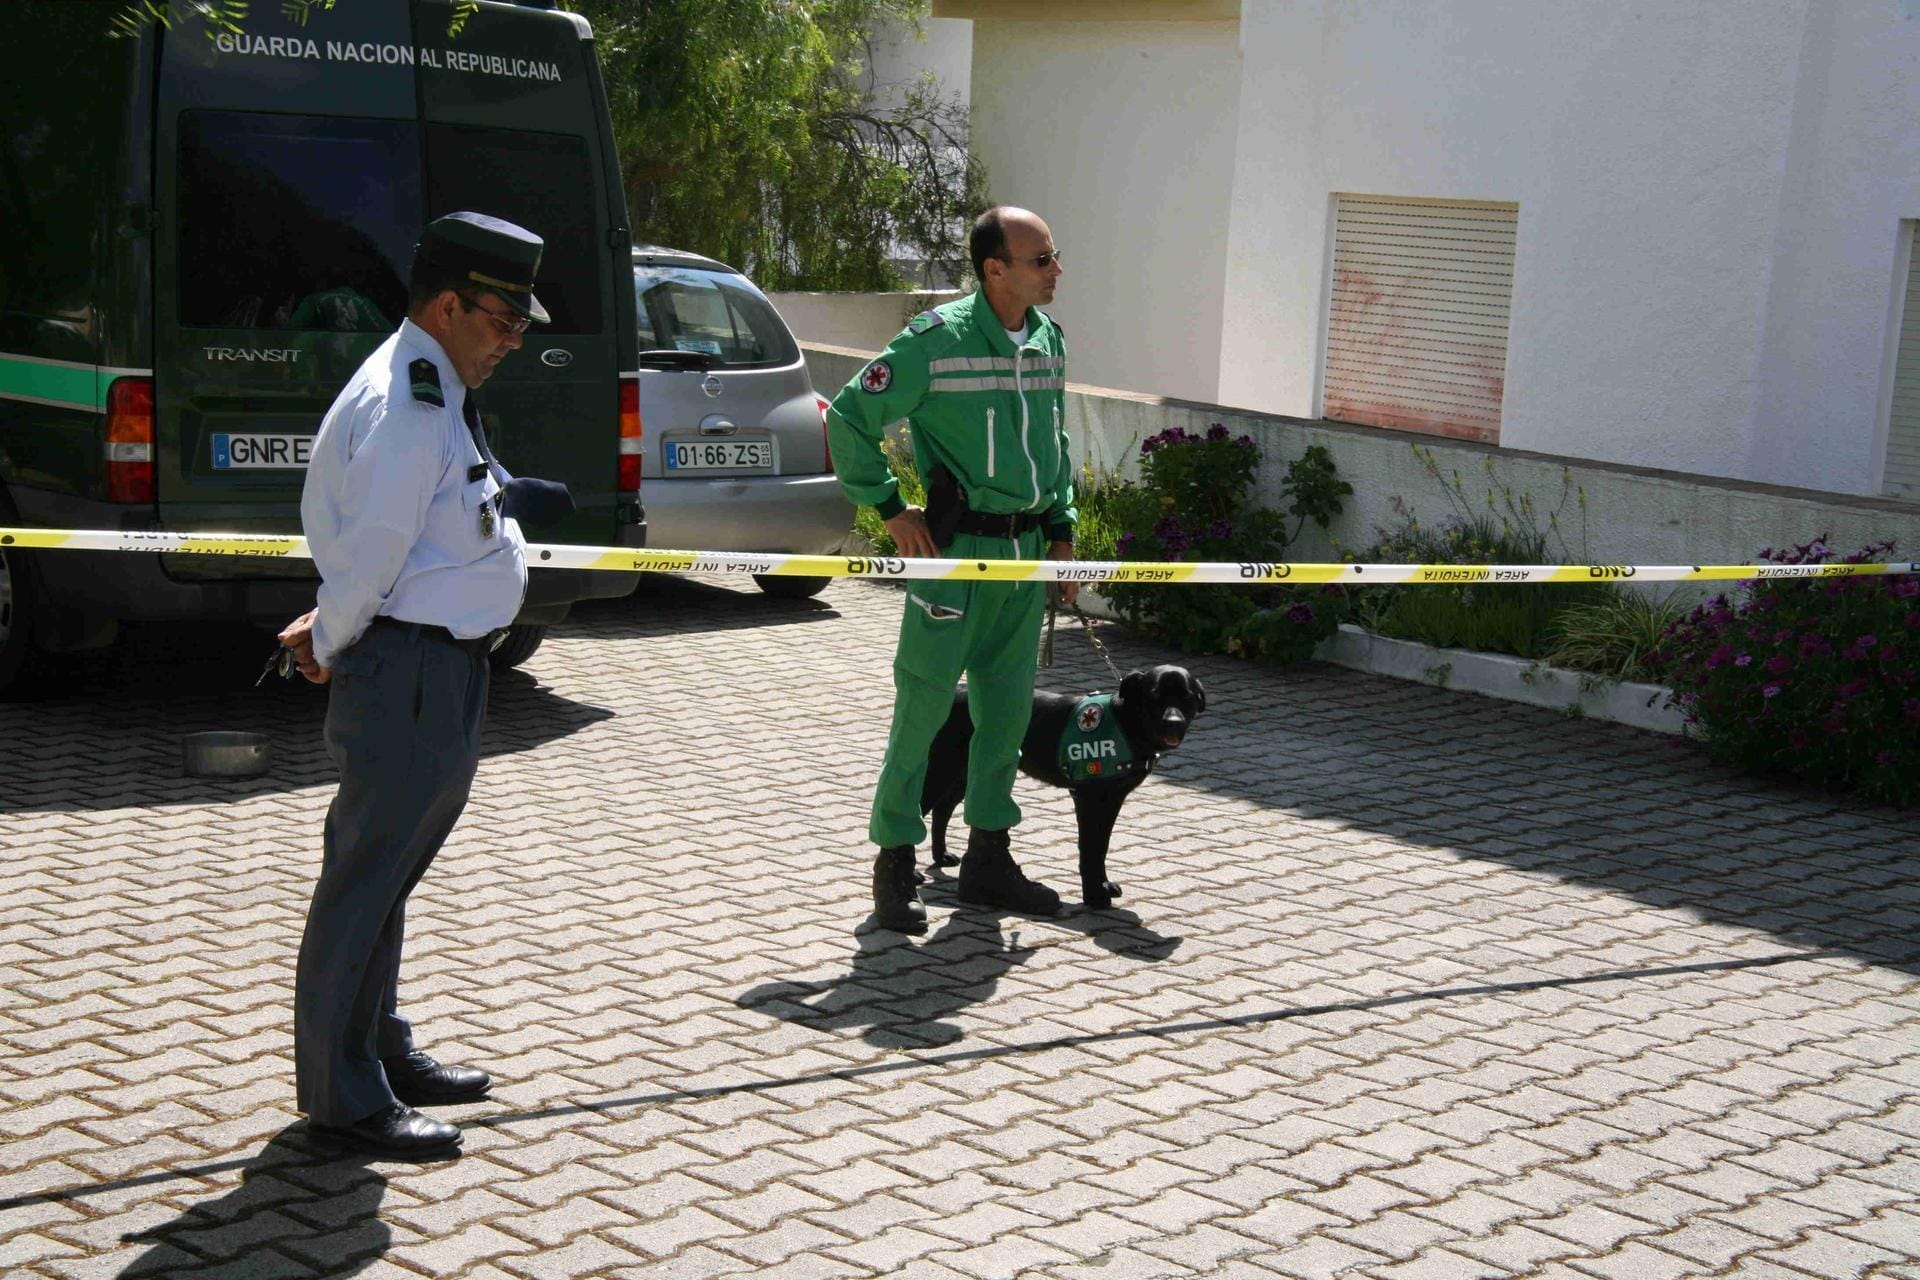 Juli 2008: Die portugiesische Polizei stellt die Ermittlungen ein. Es gäbe keine Hinweise auf ein Verbrechen, so die Behörde.